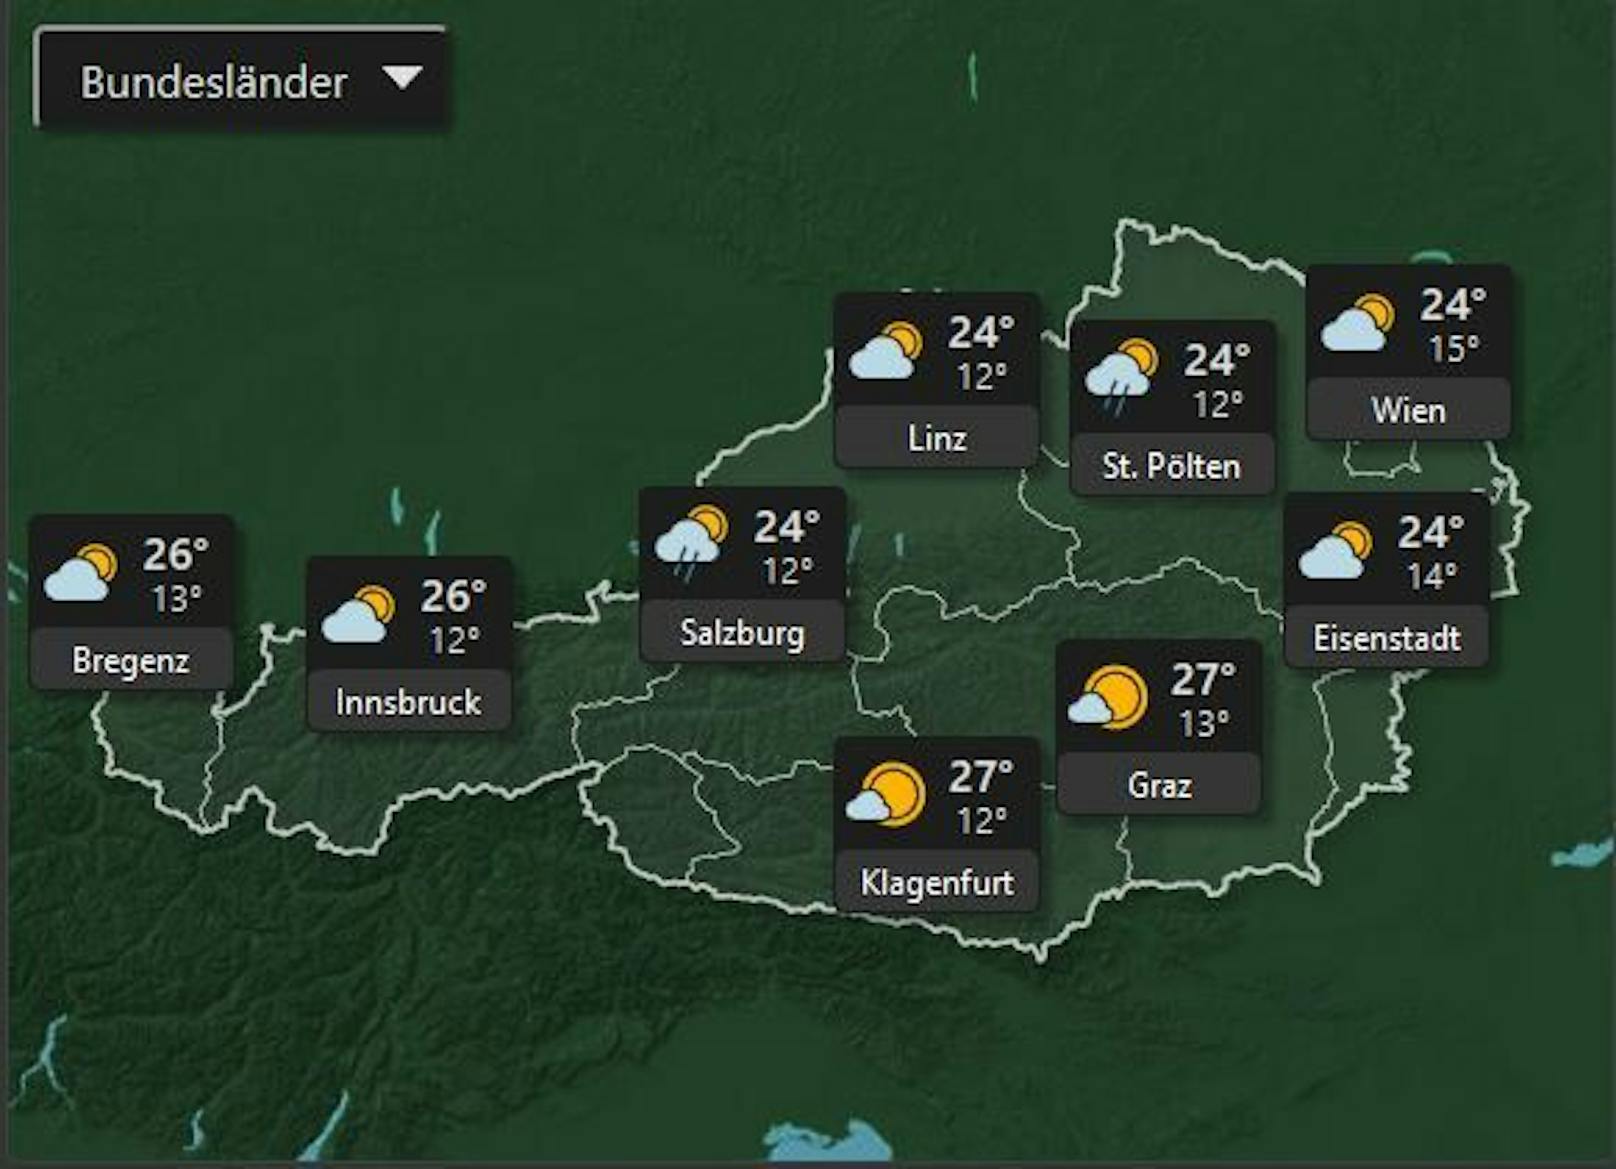 Der Osten Österreichs bis hin zu Salzburg kühlt am Mittwoch dem 6. Juli etwas ab mit Höchsttemperaturen von 24°. Umso mehr Sonne scheint in der Steiermark, Kärnten, Tirol und in Vorarlberg.&nbsp;